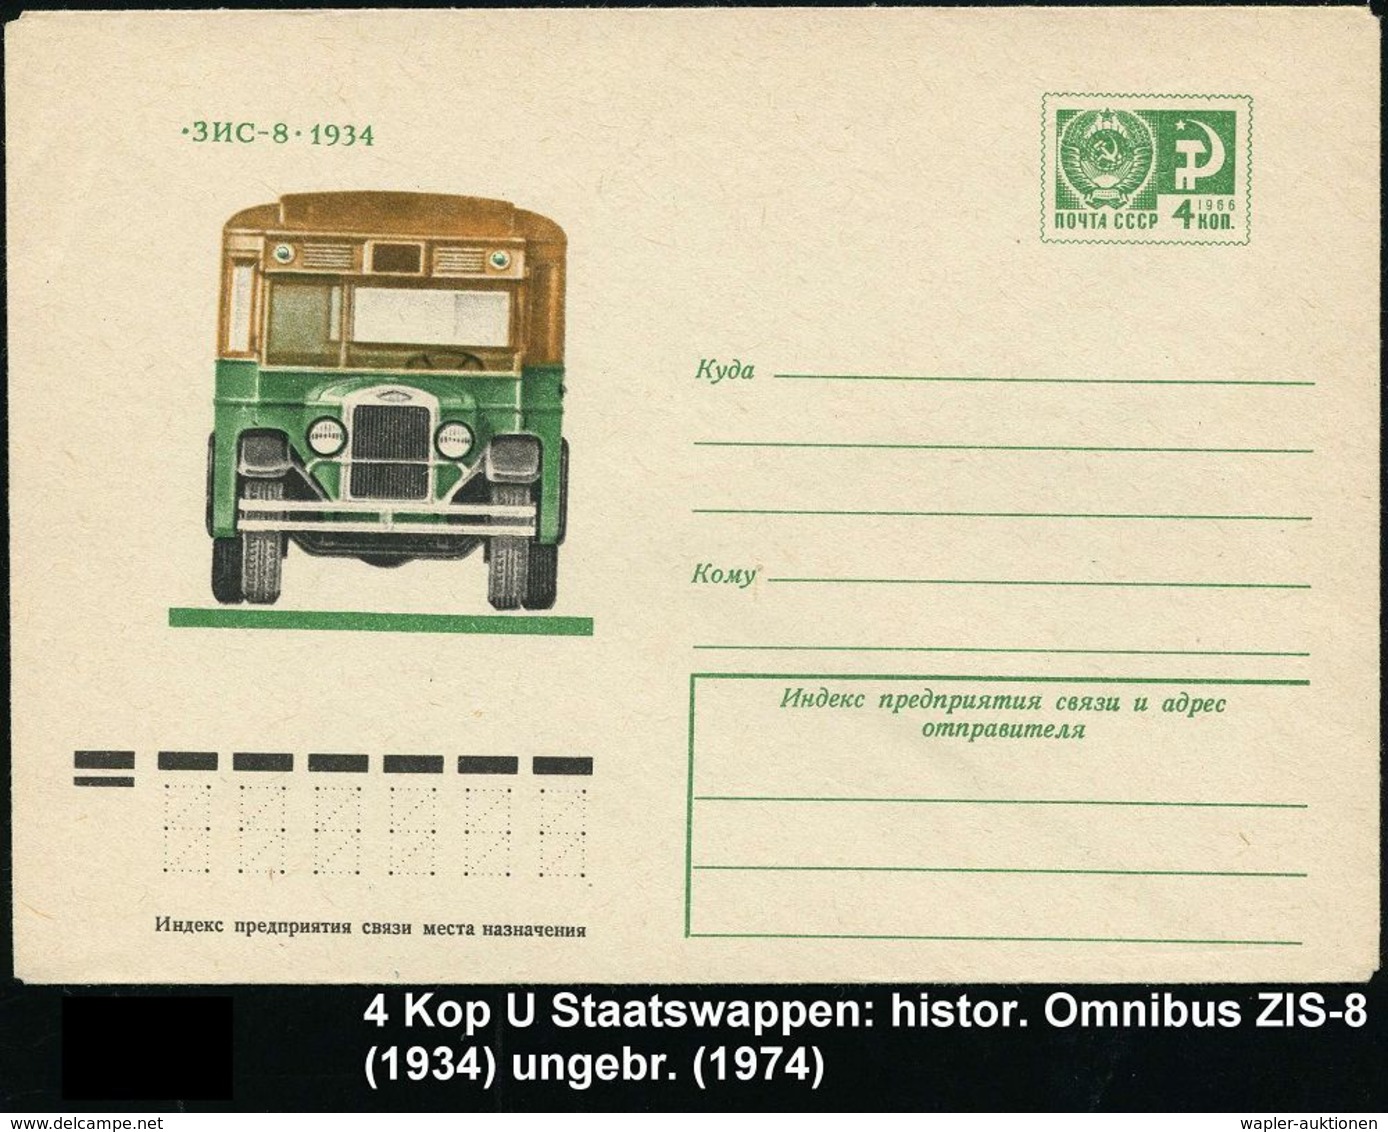 OMNIBUS / OMNIBUS-HERSTELLER : UdSSR 1974 4 Kop. U. Staatswappen, Grün Omnibus "SIS-8" Von 1934, Ungebr. - Bus